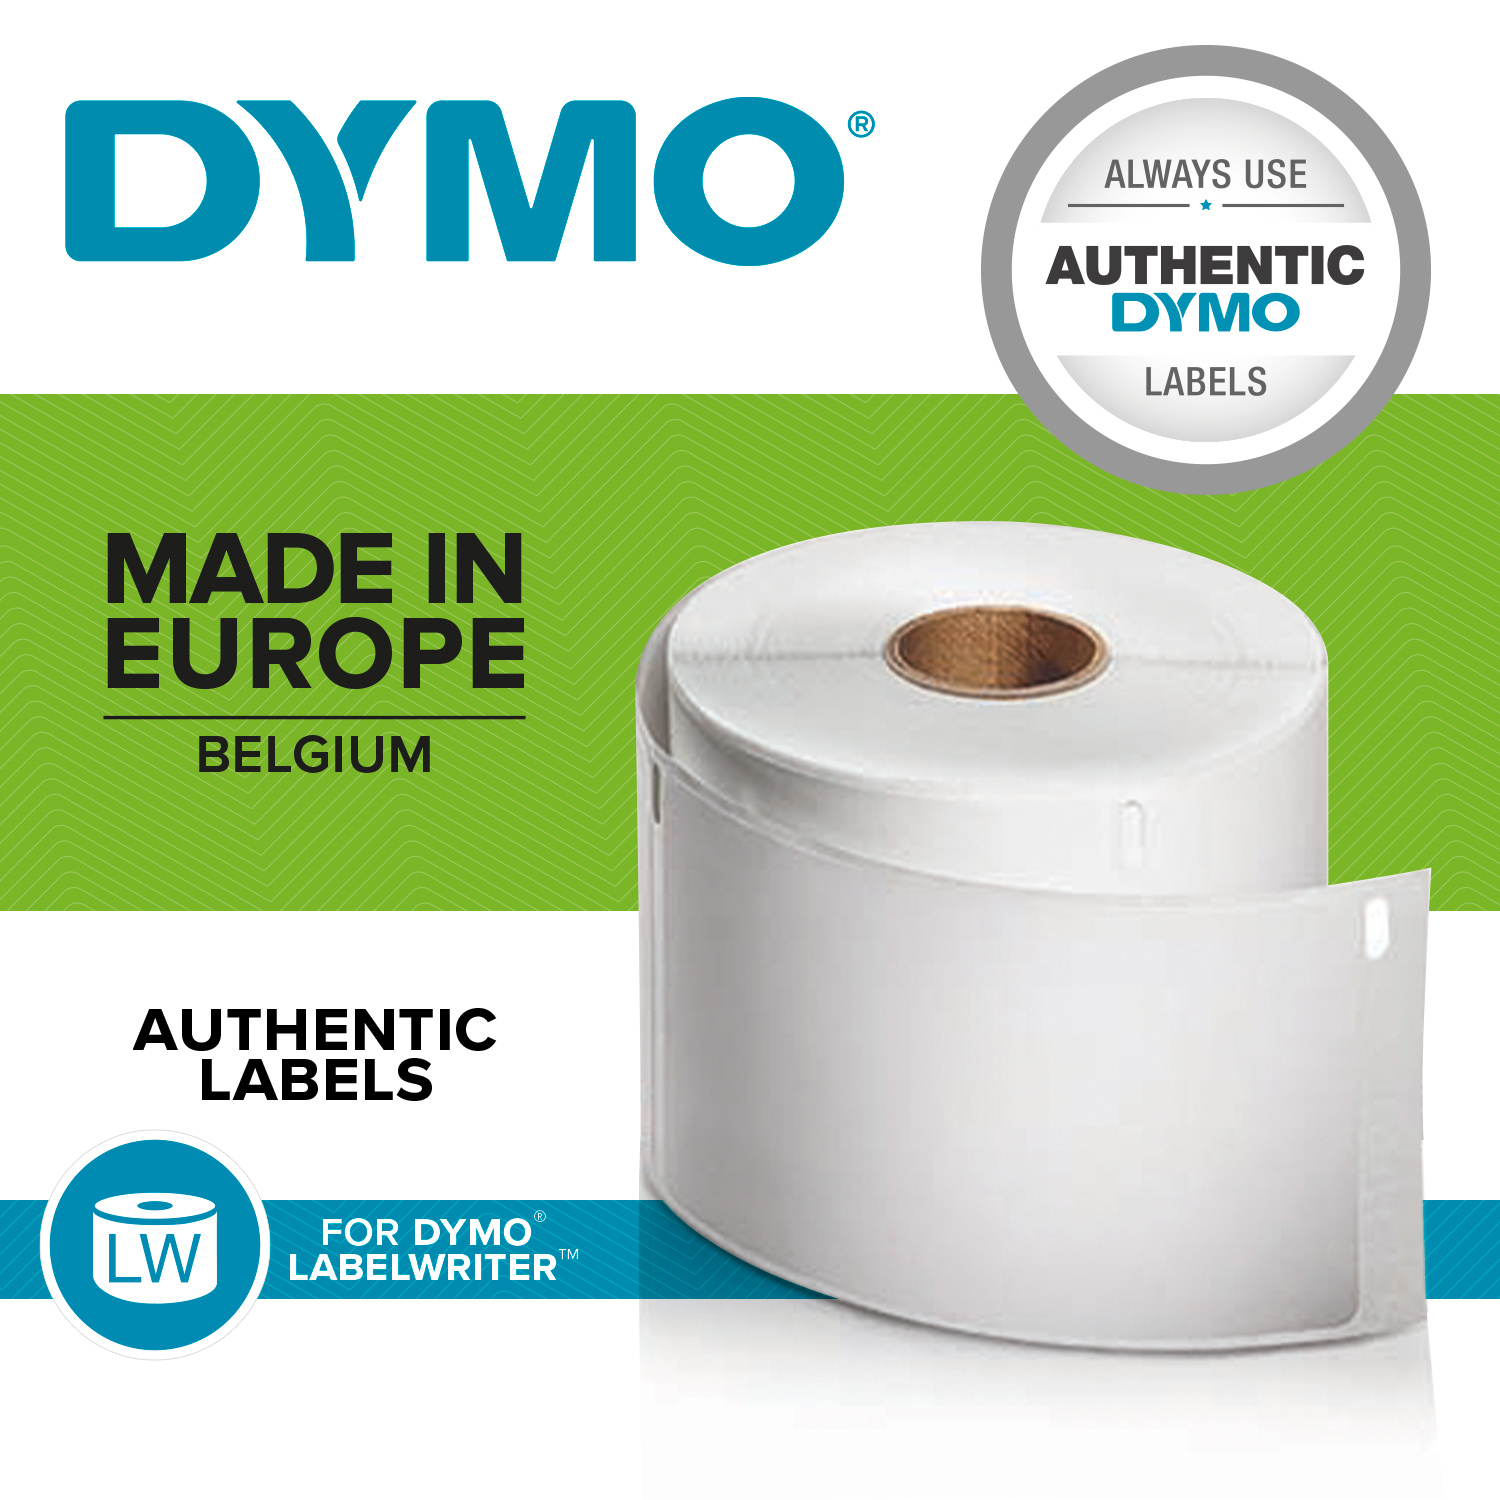 DYMO LW-Rücksendeadress-Etiketten groß 25x54mm 500St/Rolle